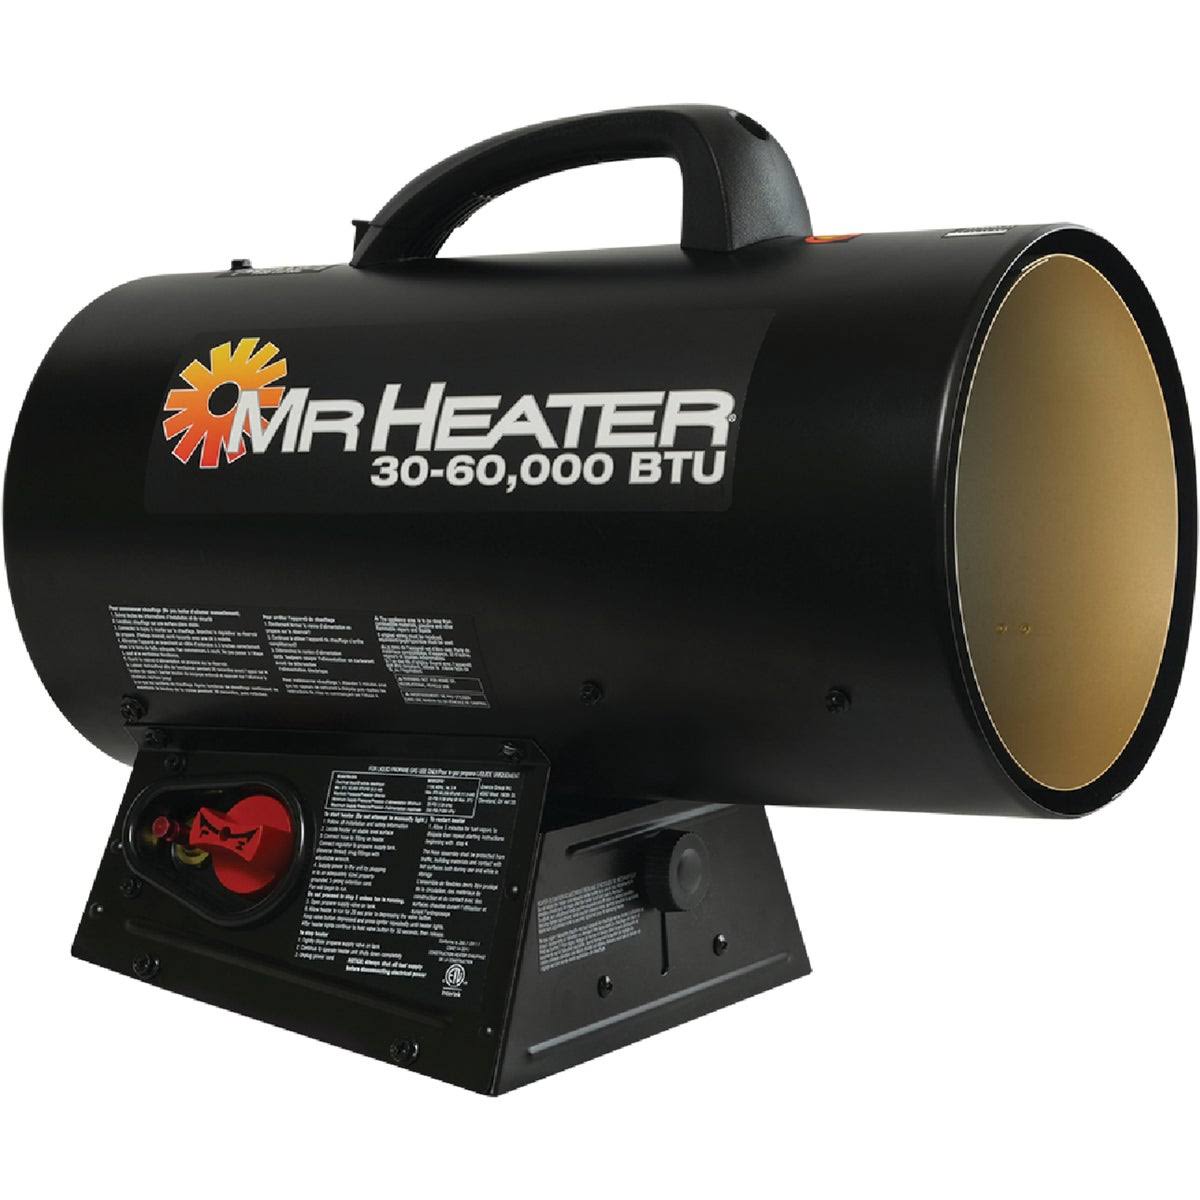 Mr. Heater Forced Air Propane Heaters - 60,000 BTU